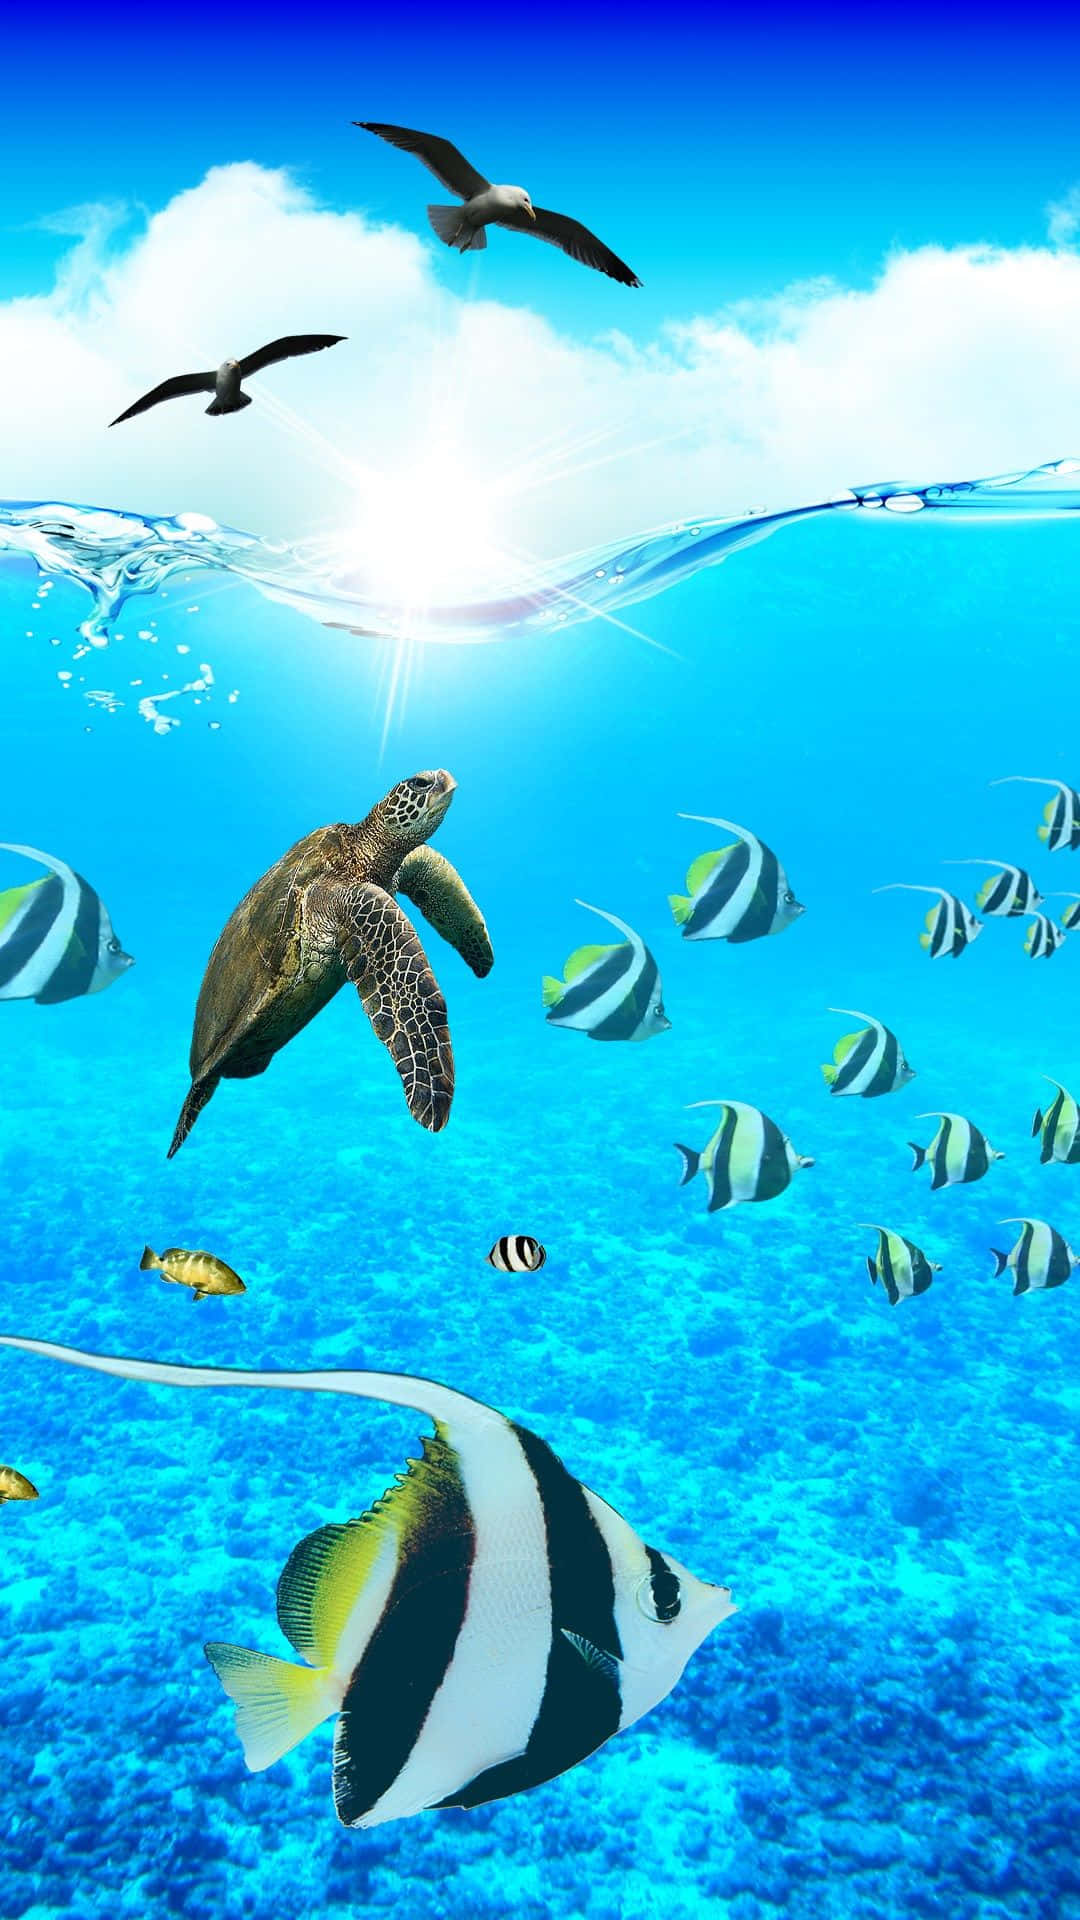 Dive Into a World of Aquatic Wonder - Aquarium Iphone Wallpaper